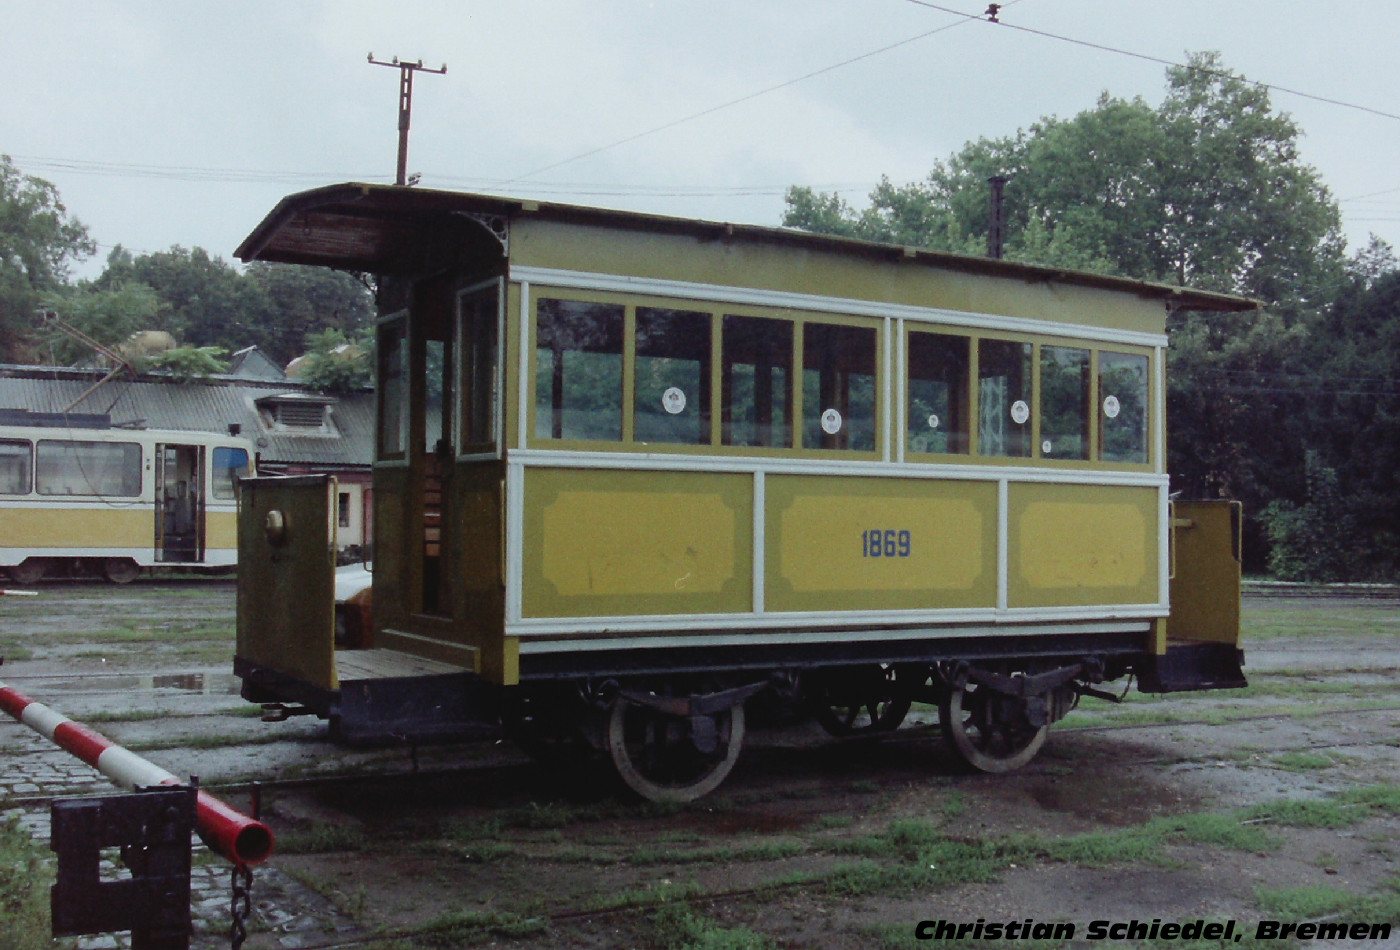 Horse tram #1869